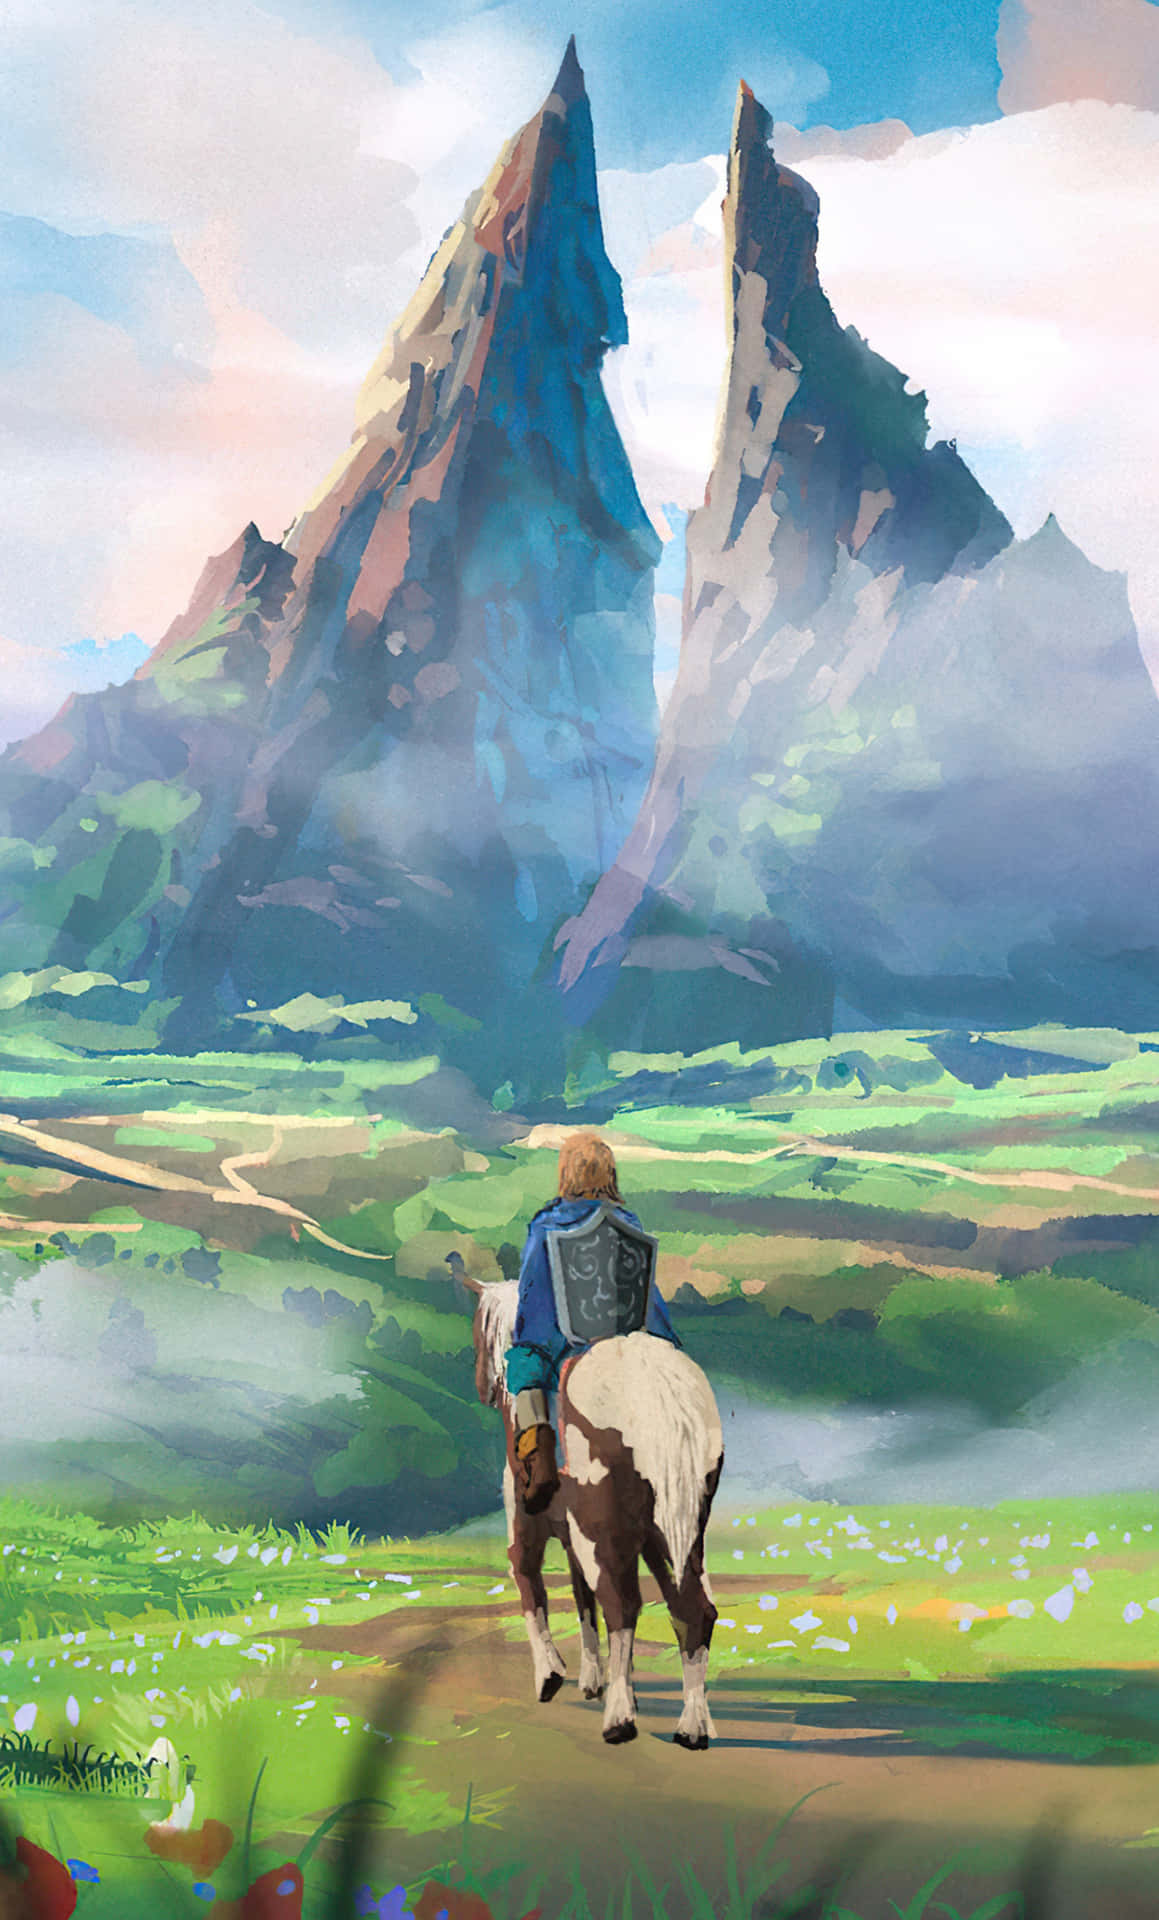 Un'avventuraindimenticabile Aspetta I Giocatori De The Legend Of Zelda Su Iphone. Sfondo